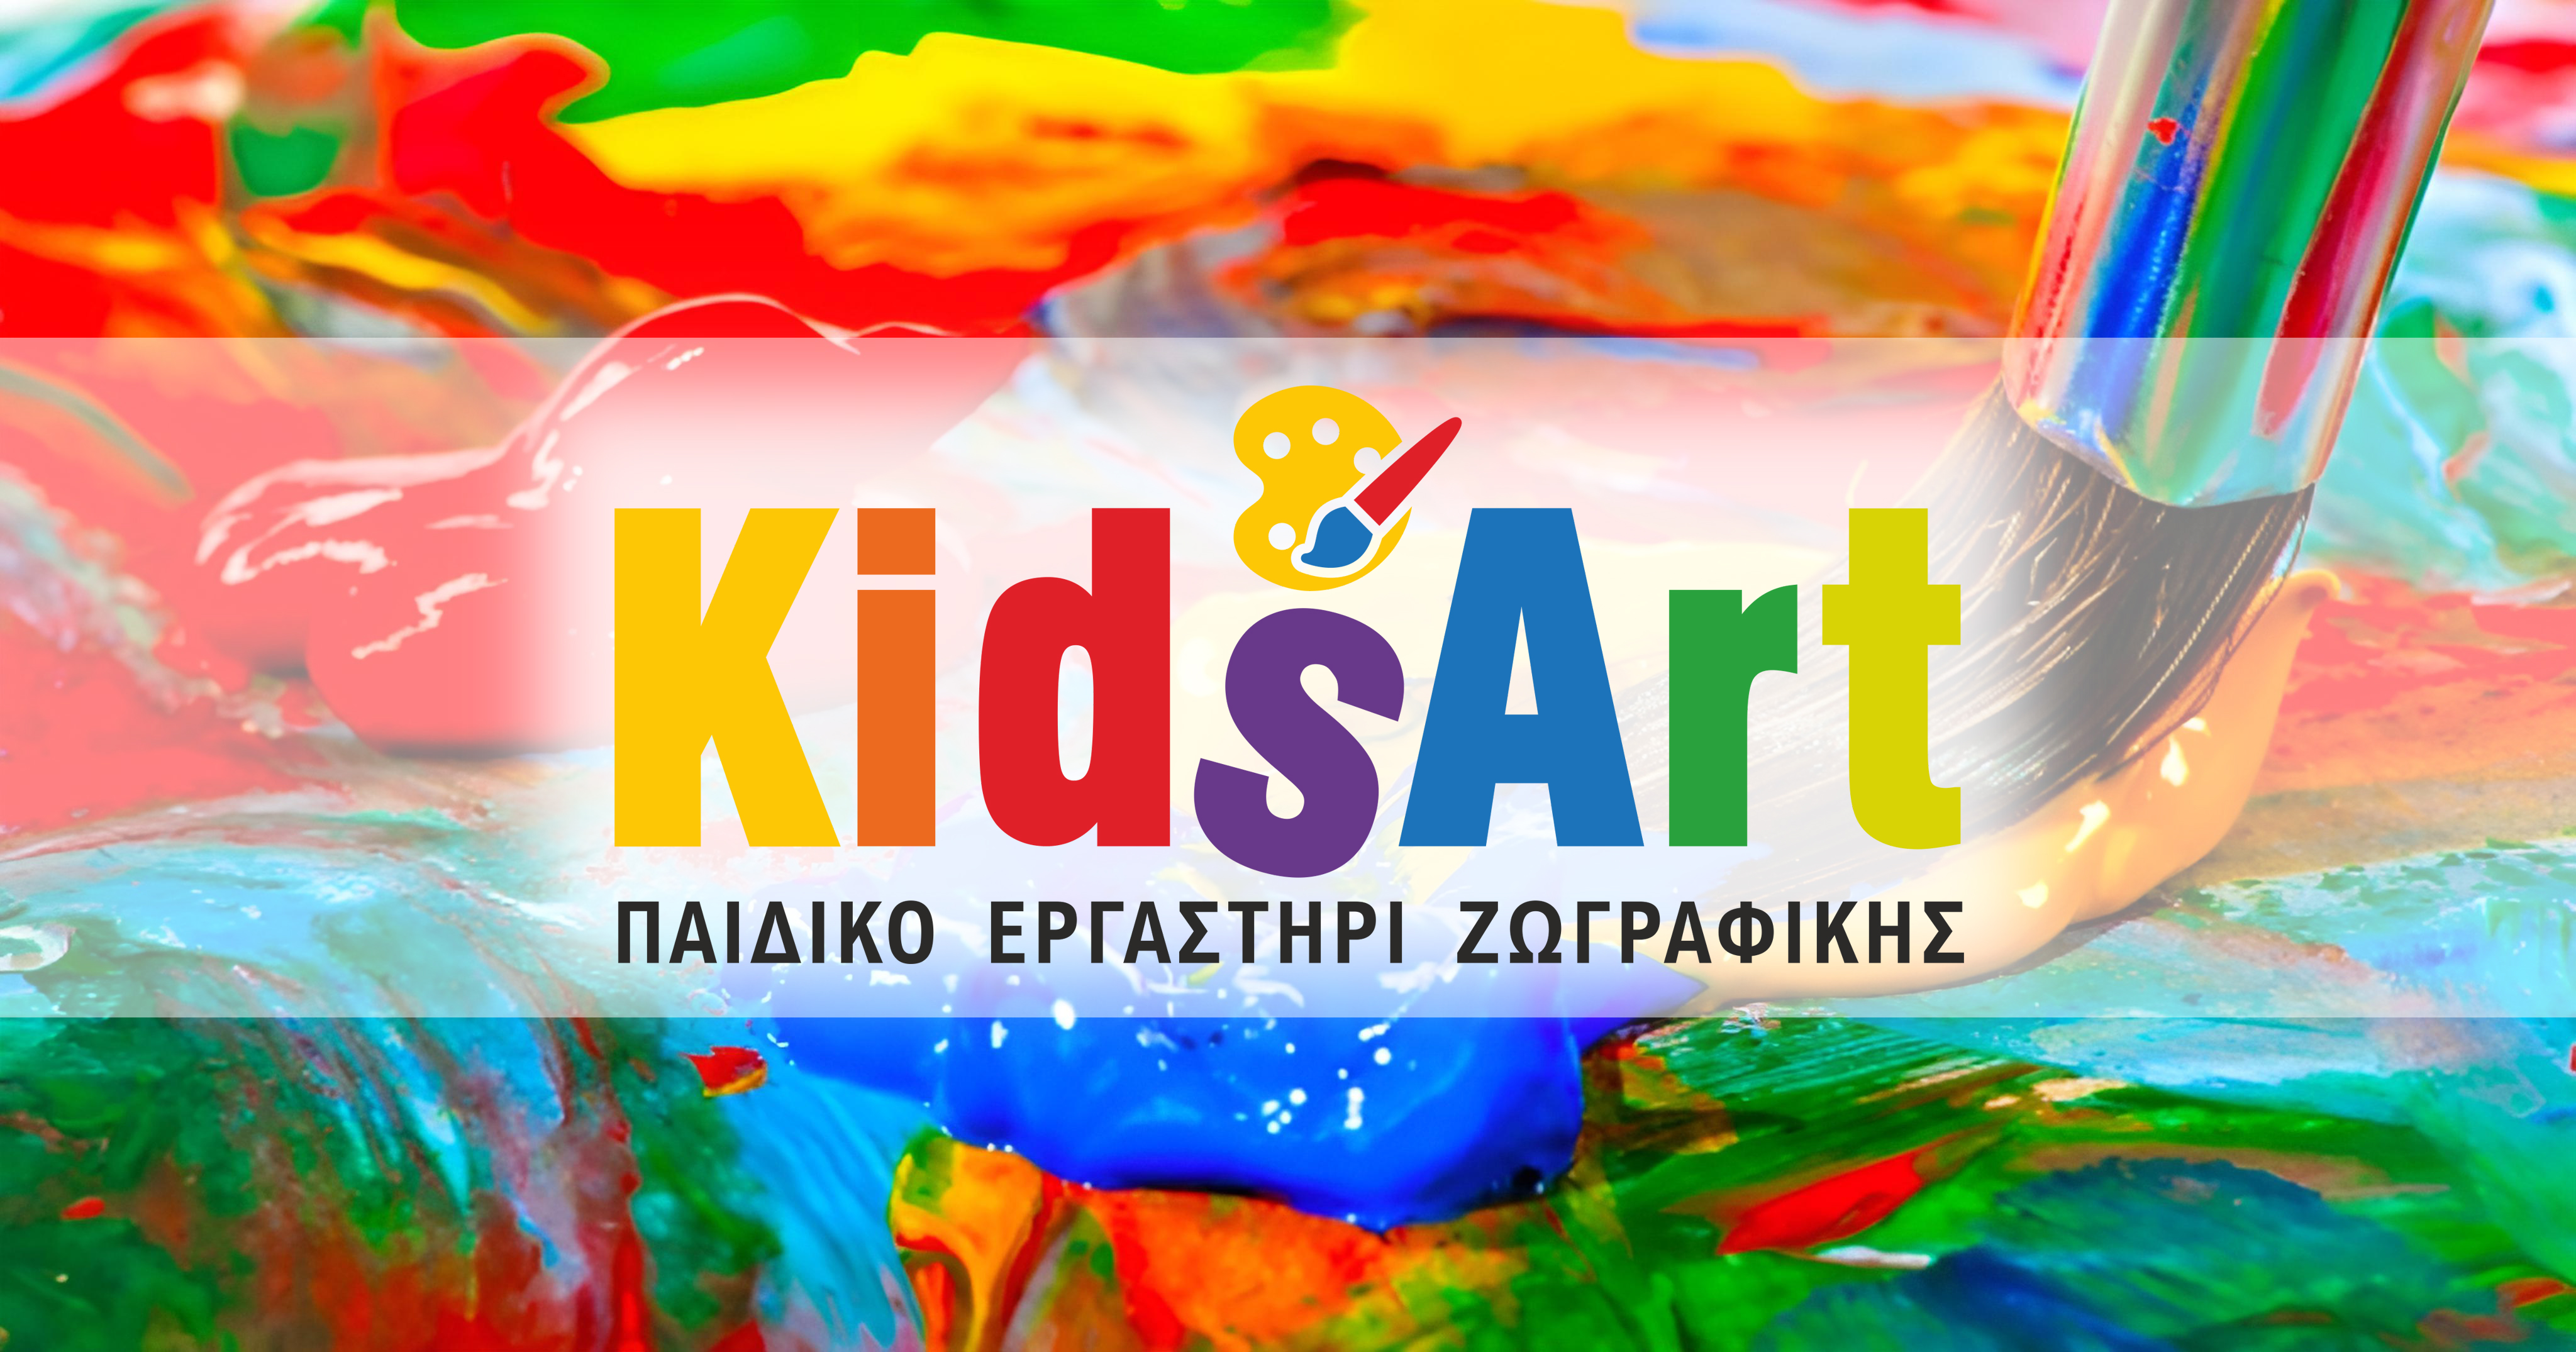 new-logo-kidsart-banner